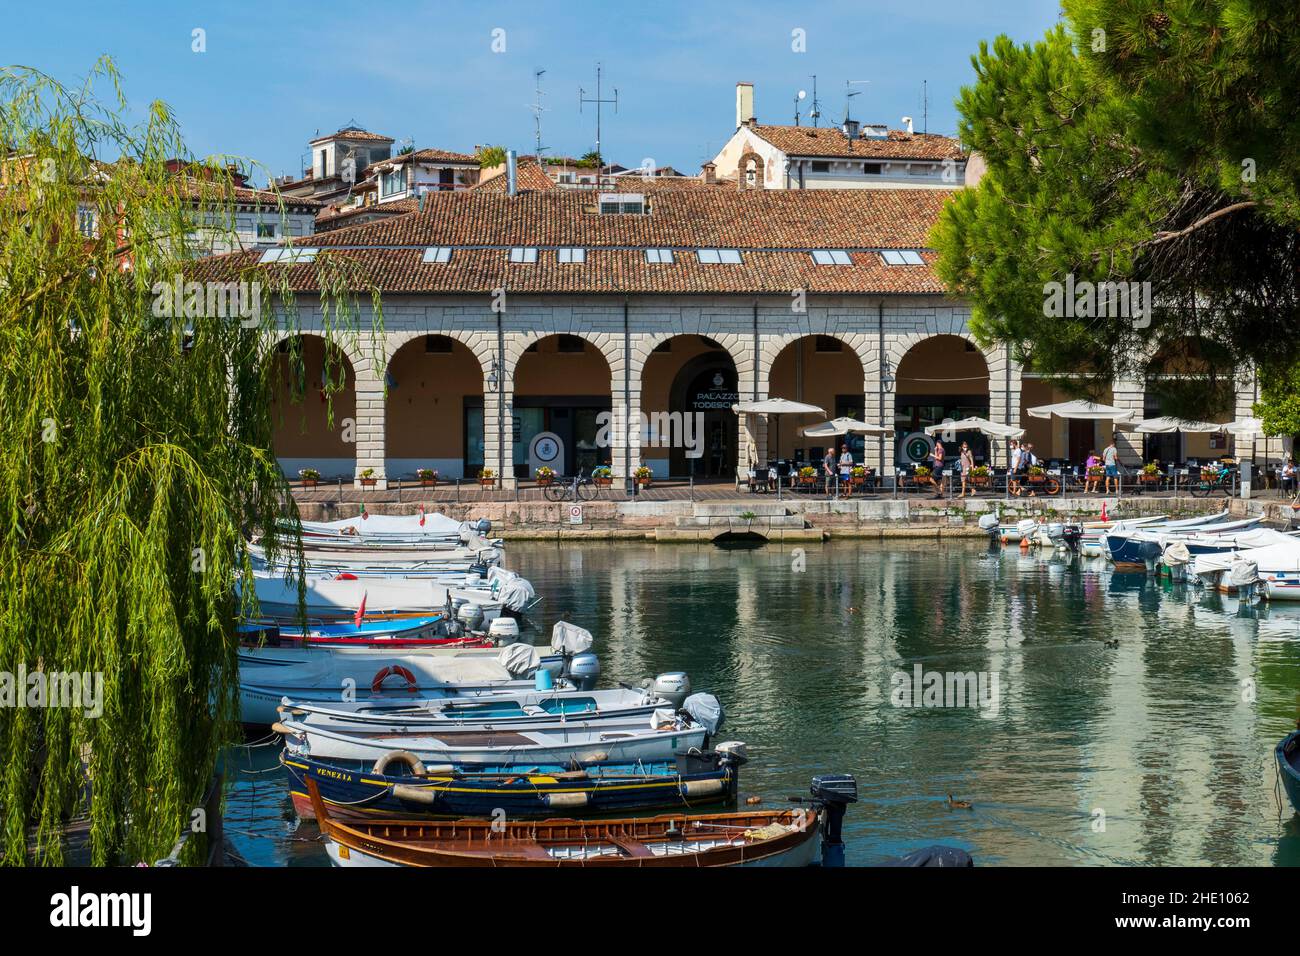 Alter Hafen Porto Vecchio in Desenzano Stock Photo - Alamy